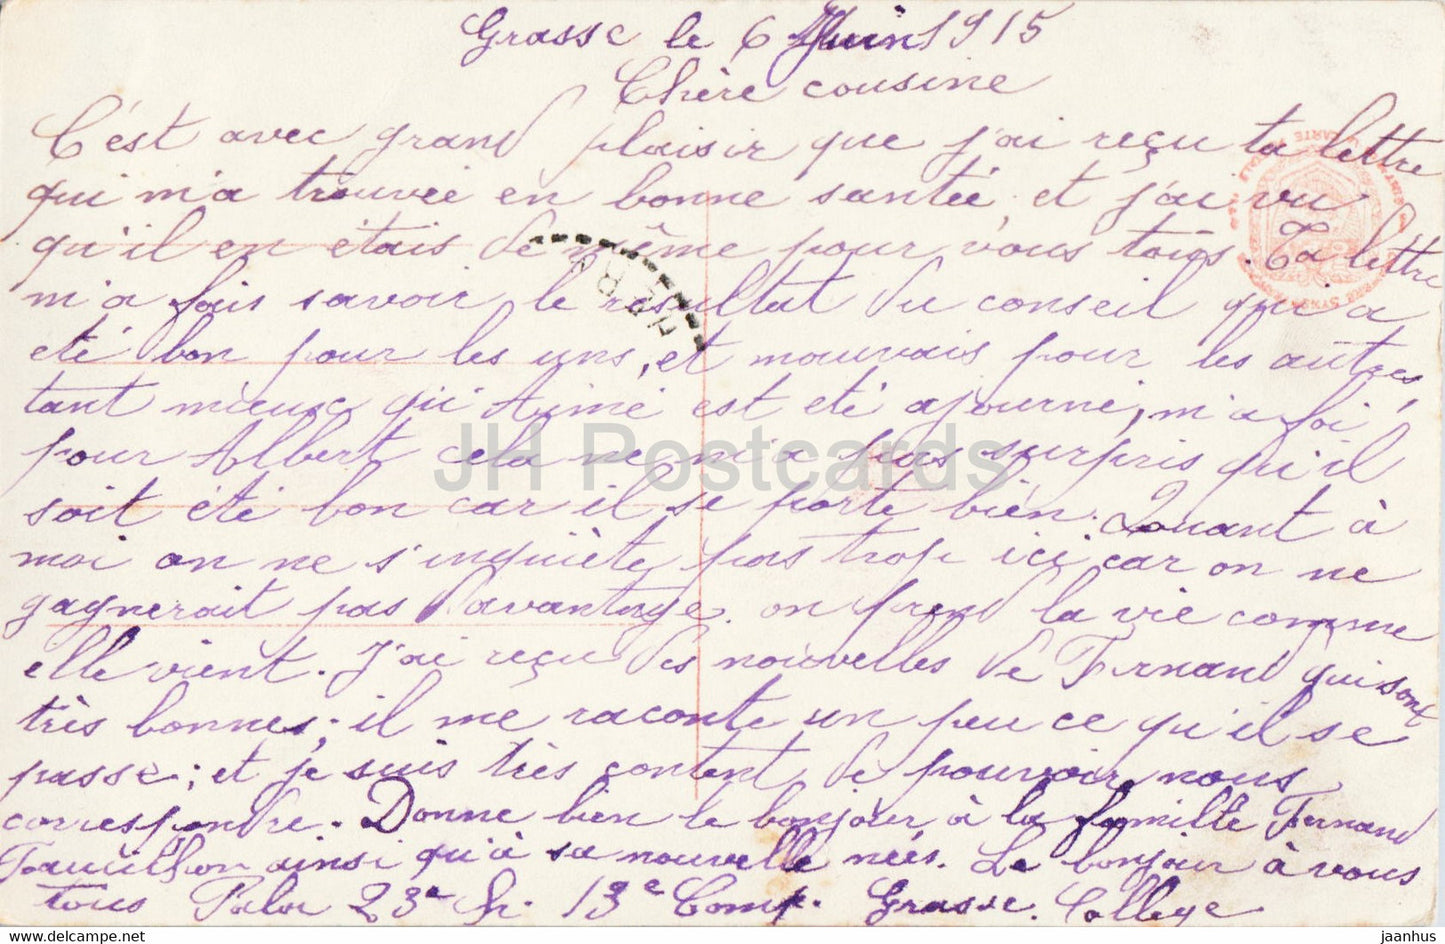 Au Sommet - soldat - militaire - 327 - FURIA - carte postale ancienne - 1915 - France - occasion